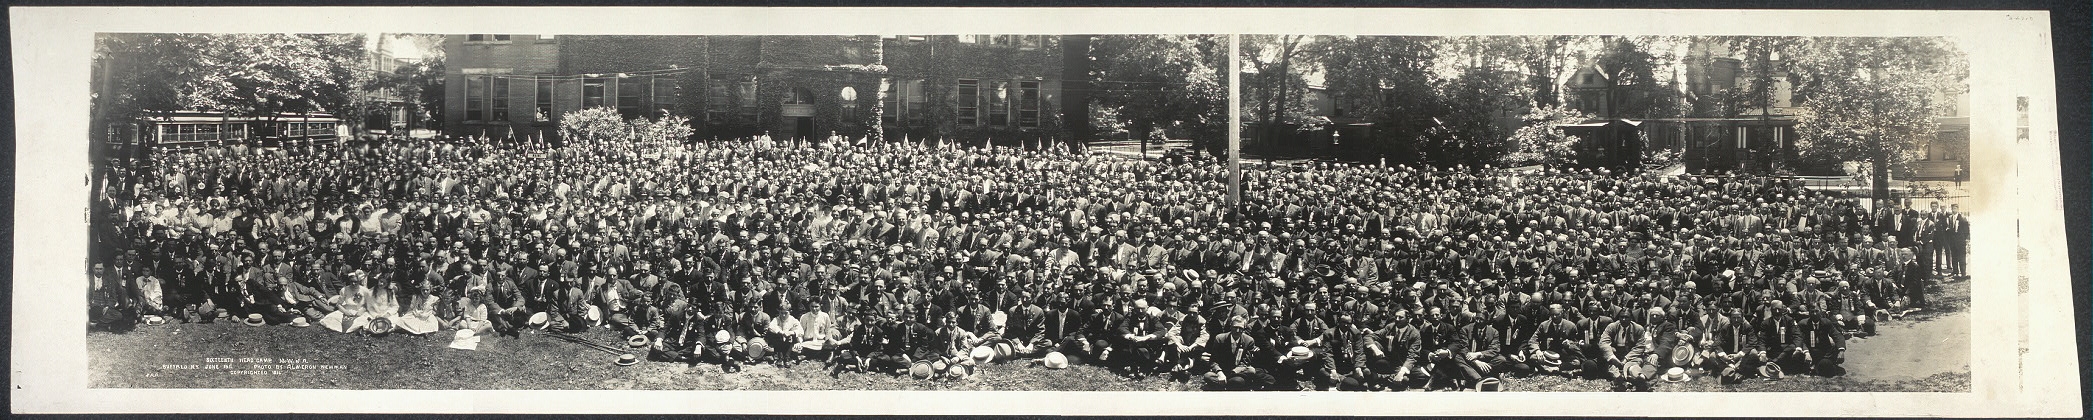 Sixteenth Head Camp, M.W. of A., Buffalo, N.Y., June, 1911